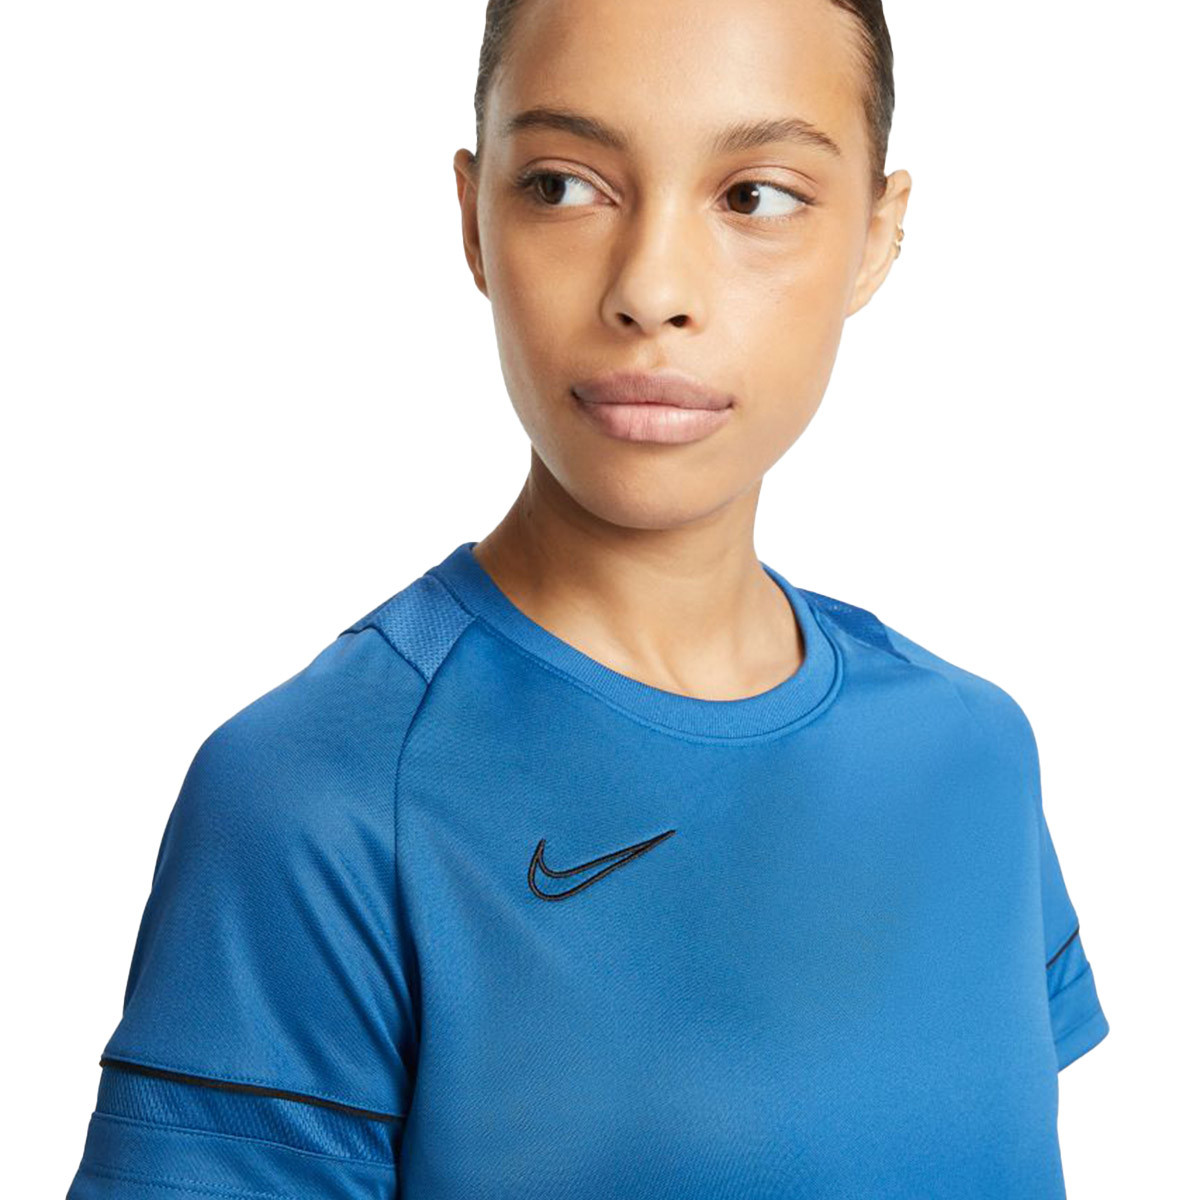 Camiseta Nike Academy 21 Training m/c Mujer Royal Blue-Black - Emotion